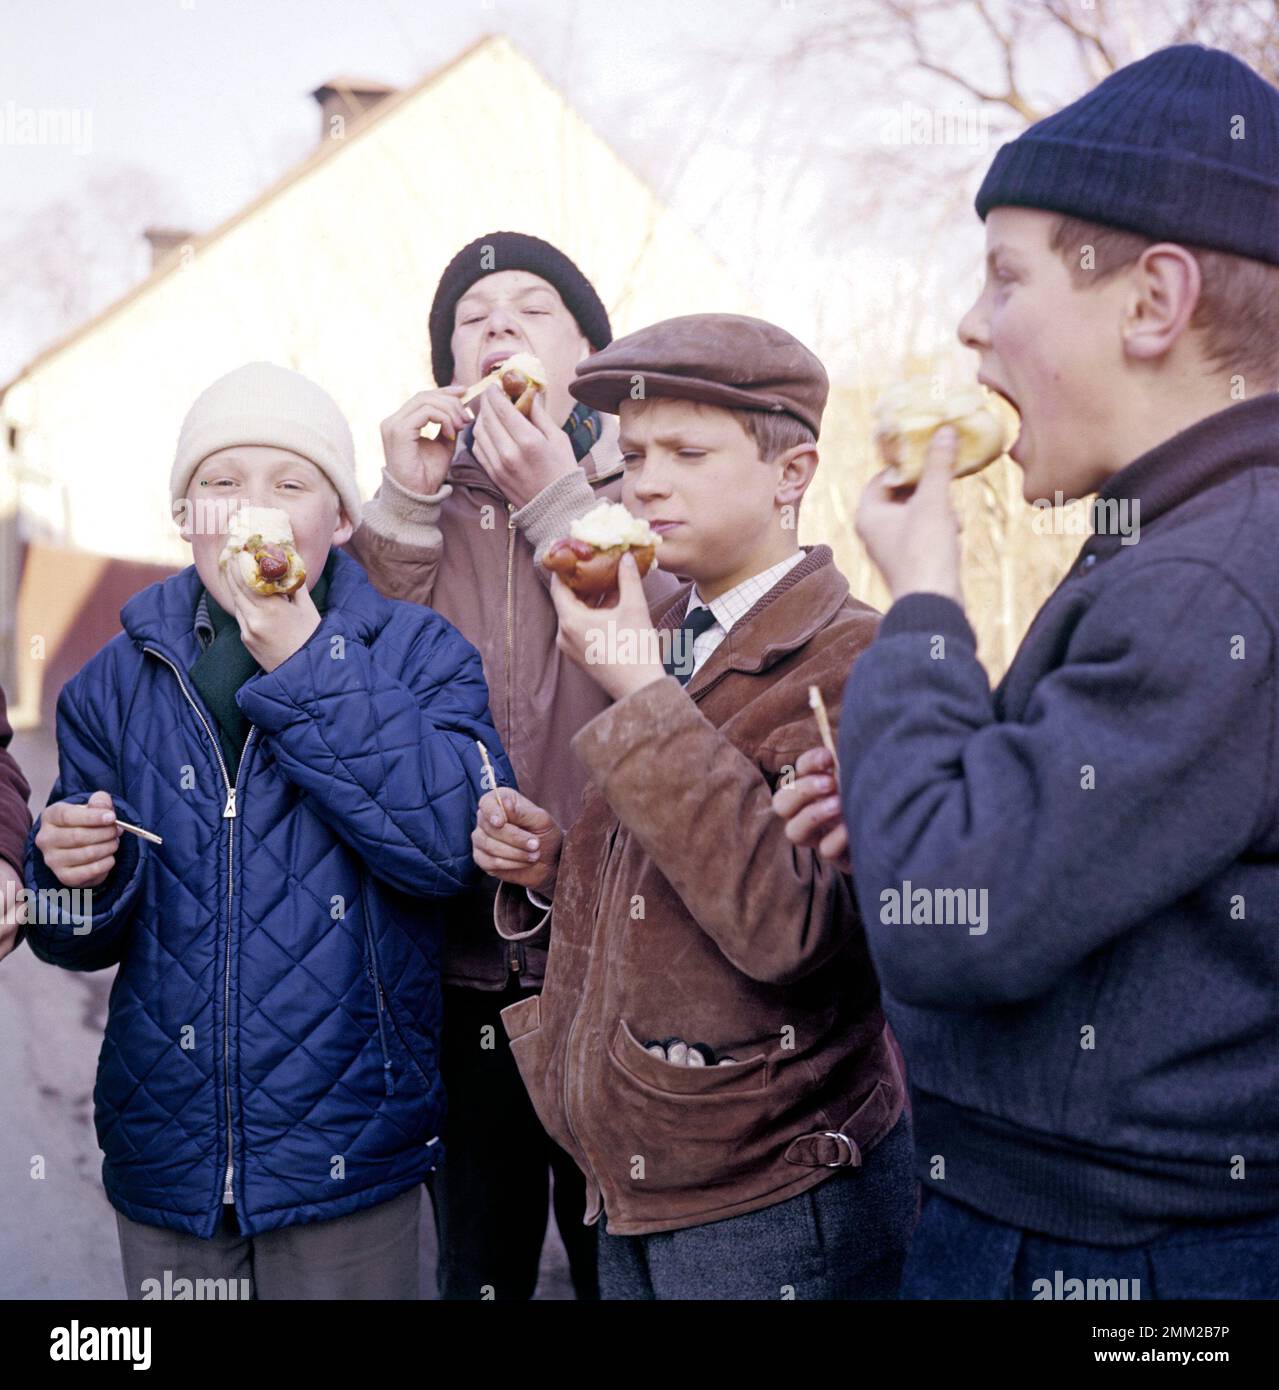 Carl XVI Gustaf, König von Schweden. Geboren am 30. april 1946. Abbildung: 14 Jahre als Schuljunge an der Privatschule Sigtuna humanistiska läroverk 1960. ref. 2-39-11 Stockfoto